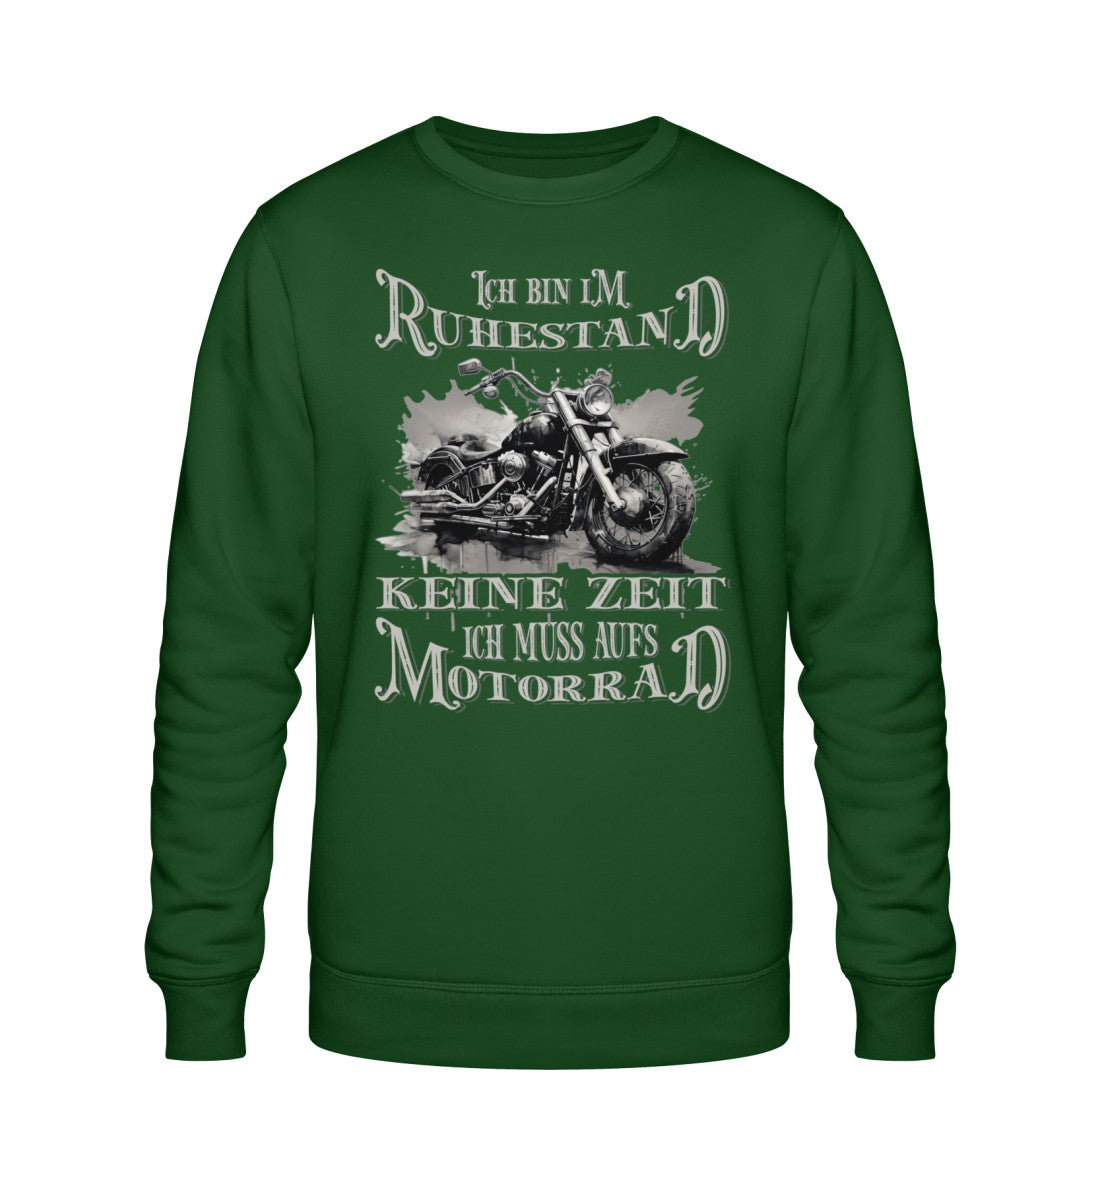 Ein Biker Sweatshirt für Motorradfahrer von Wingbikers mit dem Aufdruck, Ich bin im Ruhestand - Keine Zeit - Ich muss aufs Motorrad, in dunkelgrün.